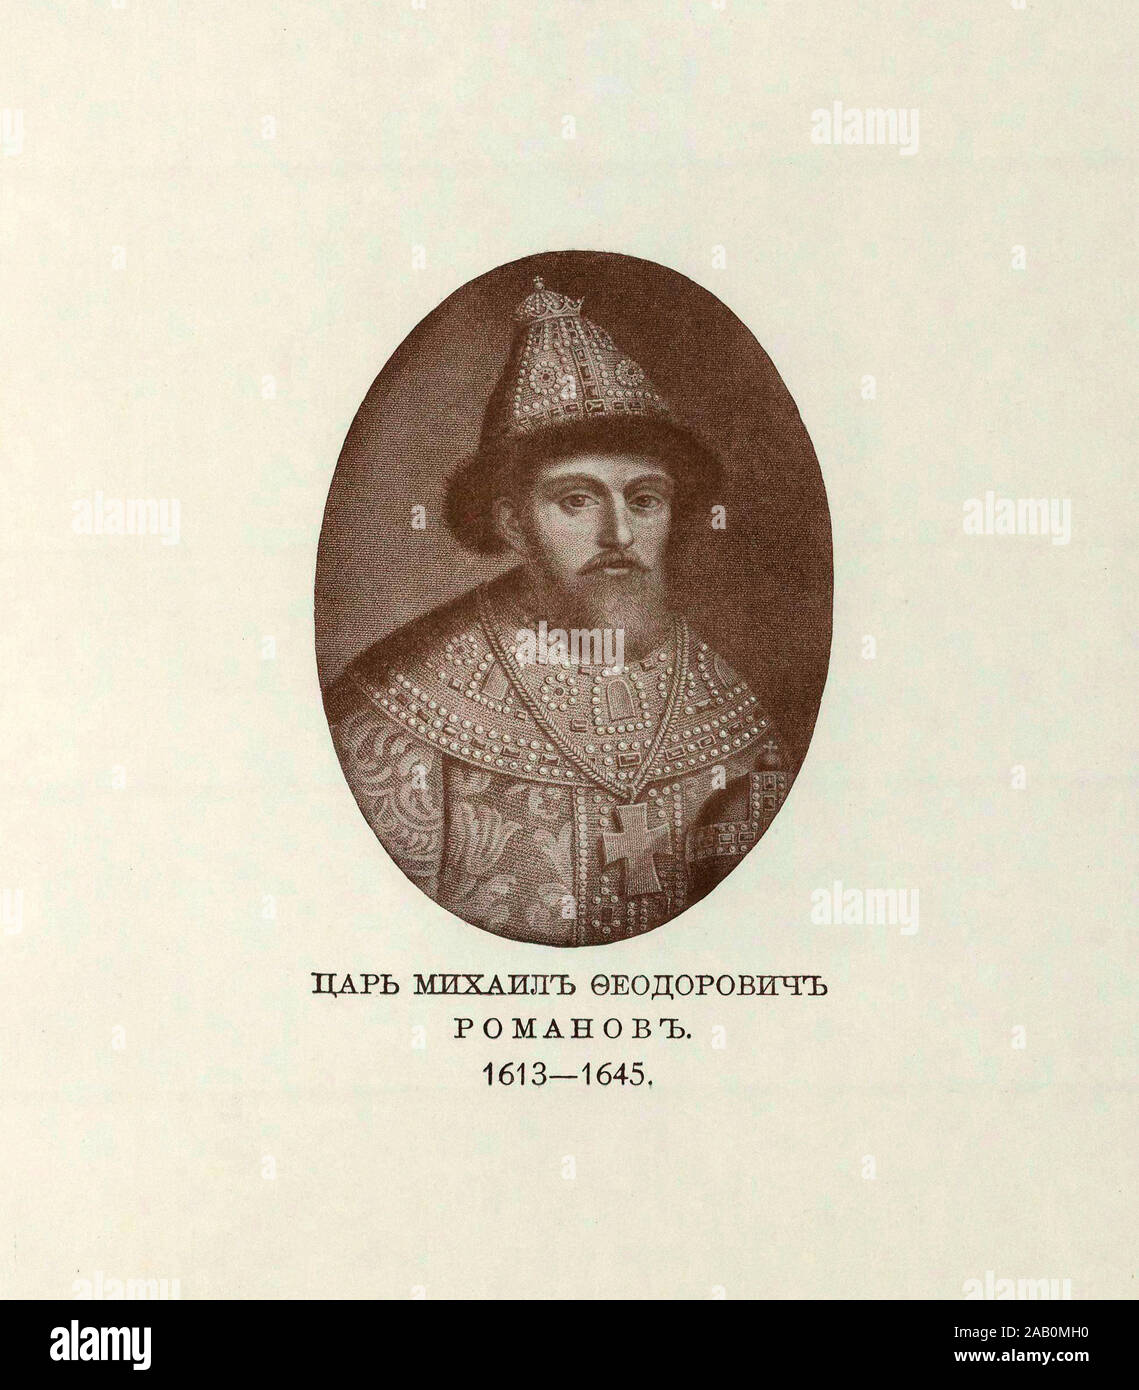 Michael (Michail Romanow Fyodorovich) (1596-1645) wurde der erste russische Zar des Hauses Romanow nach dem zemskiy Sobor von 1613 gewählten Hi Stockfoto